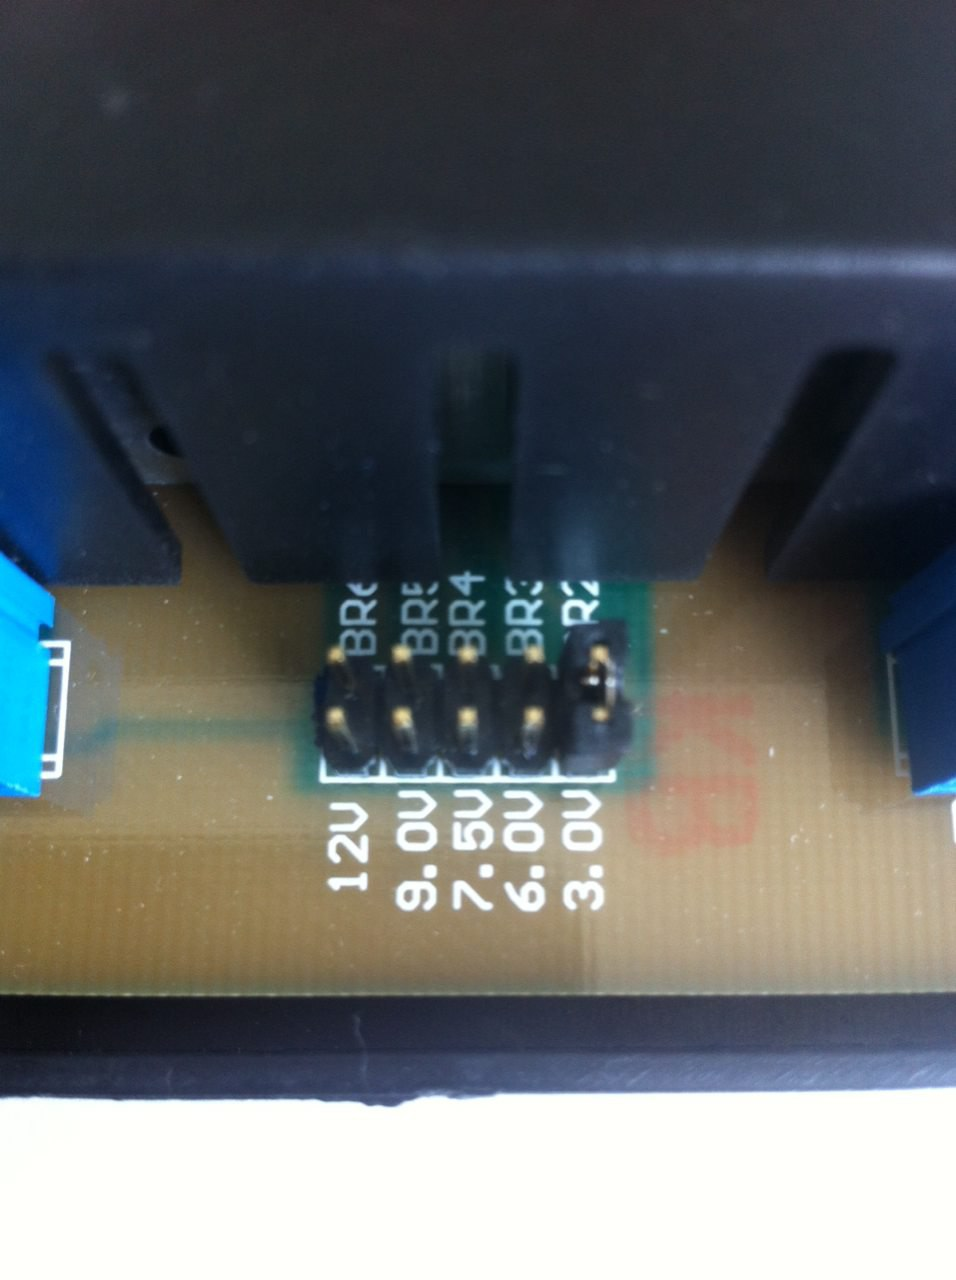 Контроллер заряда Steca PR 2020 12/24В + подарок конвертер STECA SOLSUM.